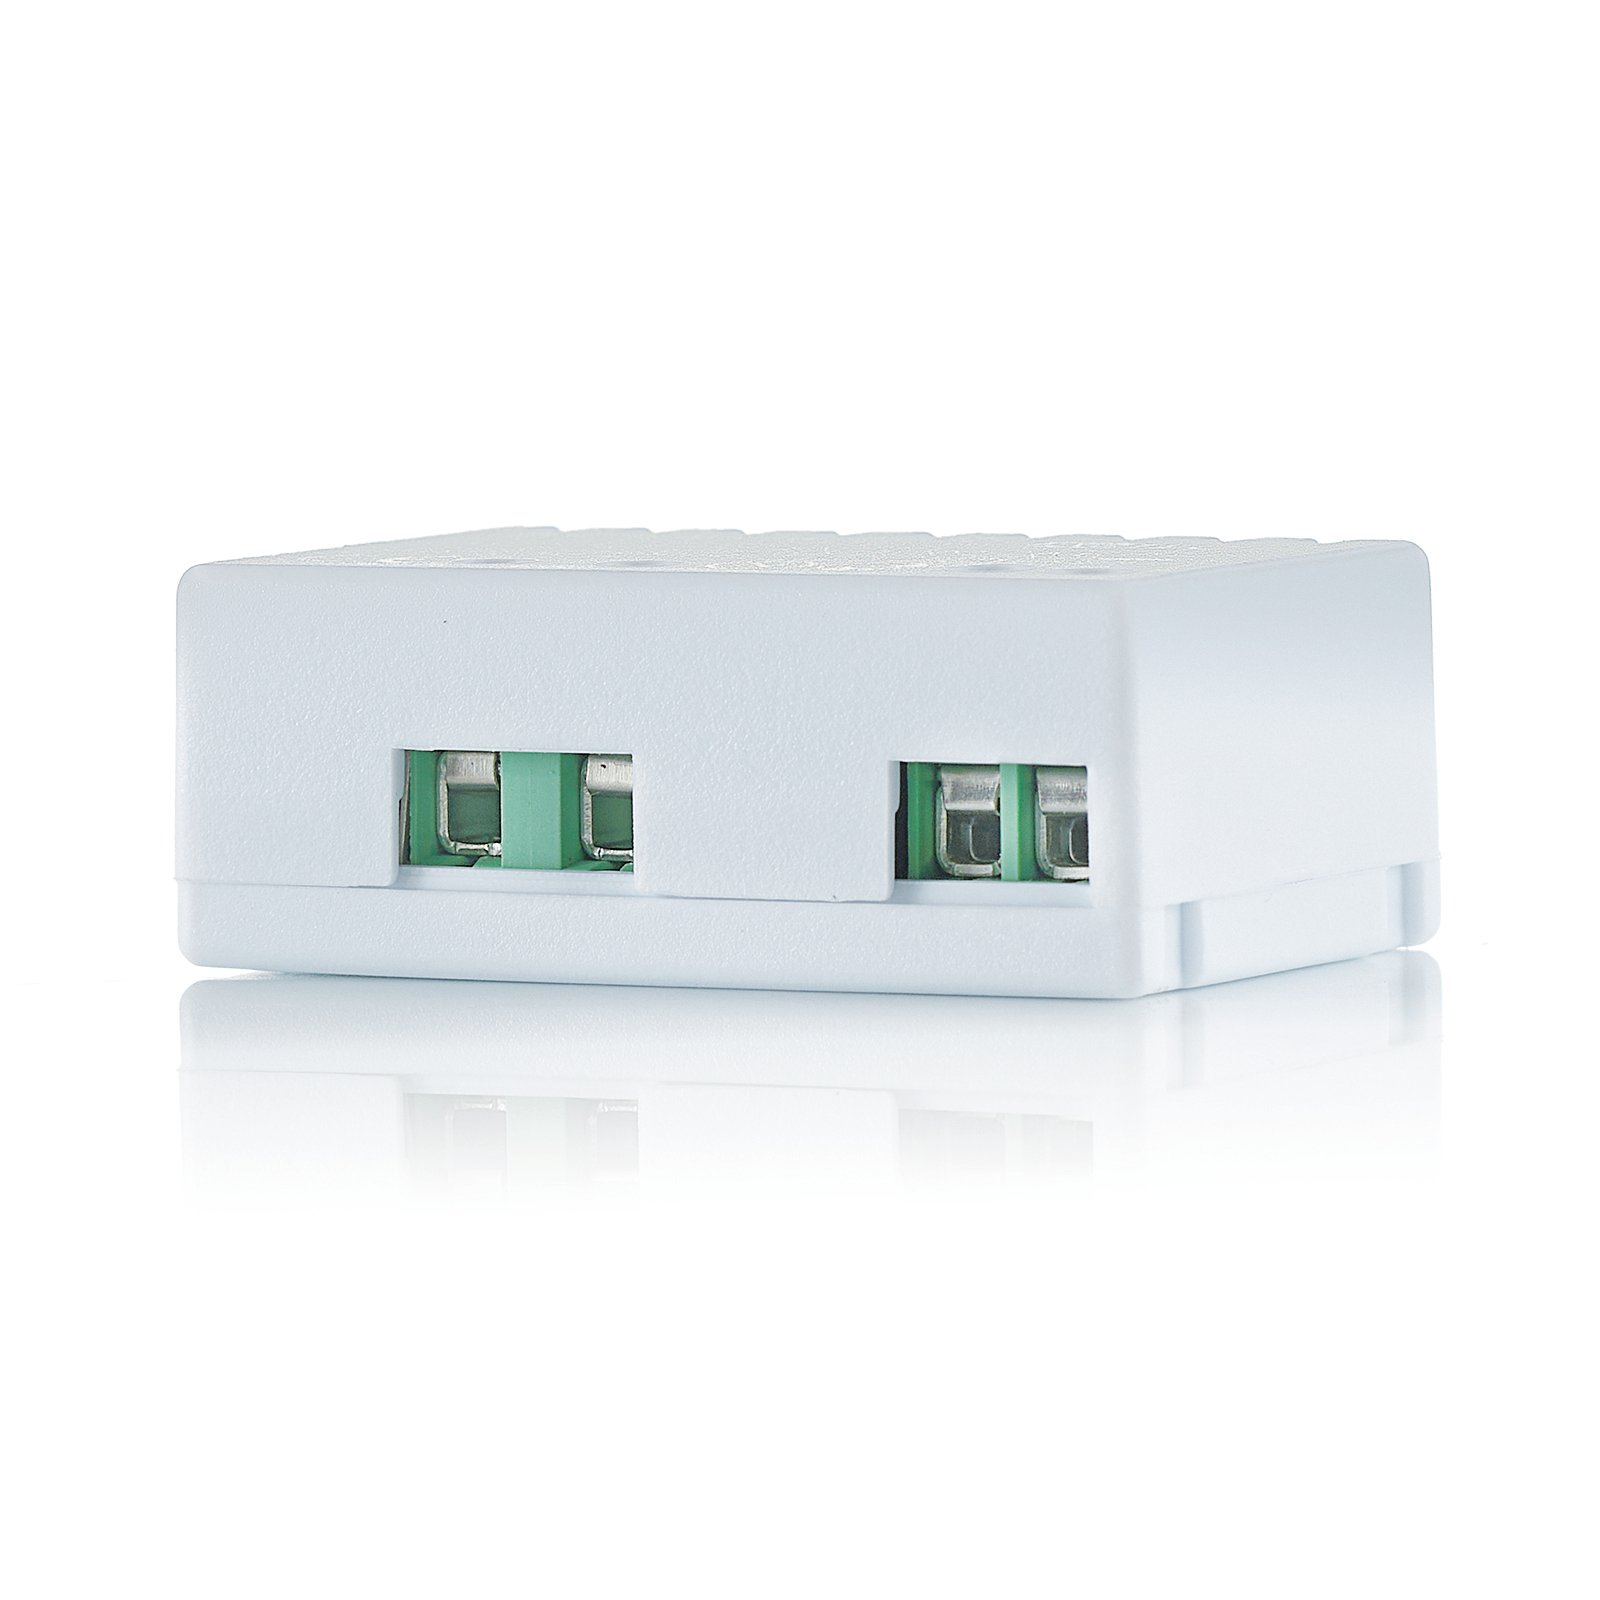 AcTEC Mini transformador LED CV 24V, 6W, IP20